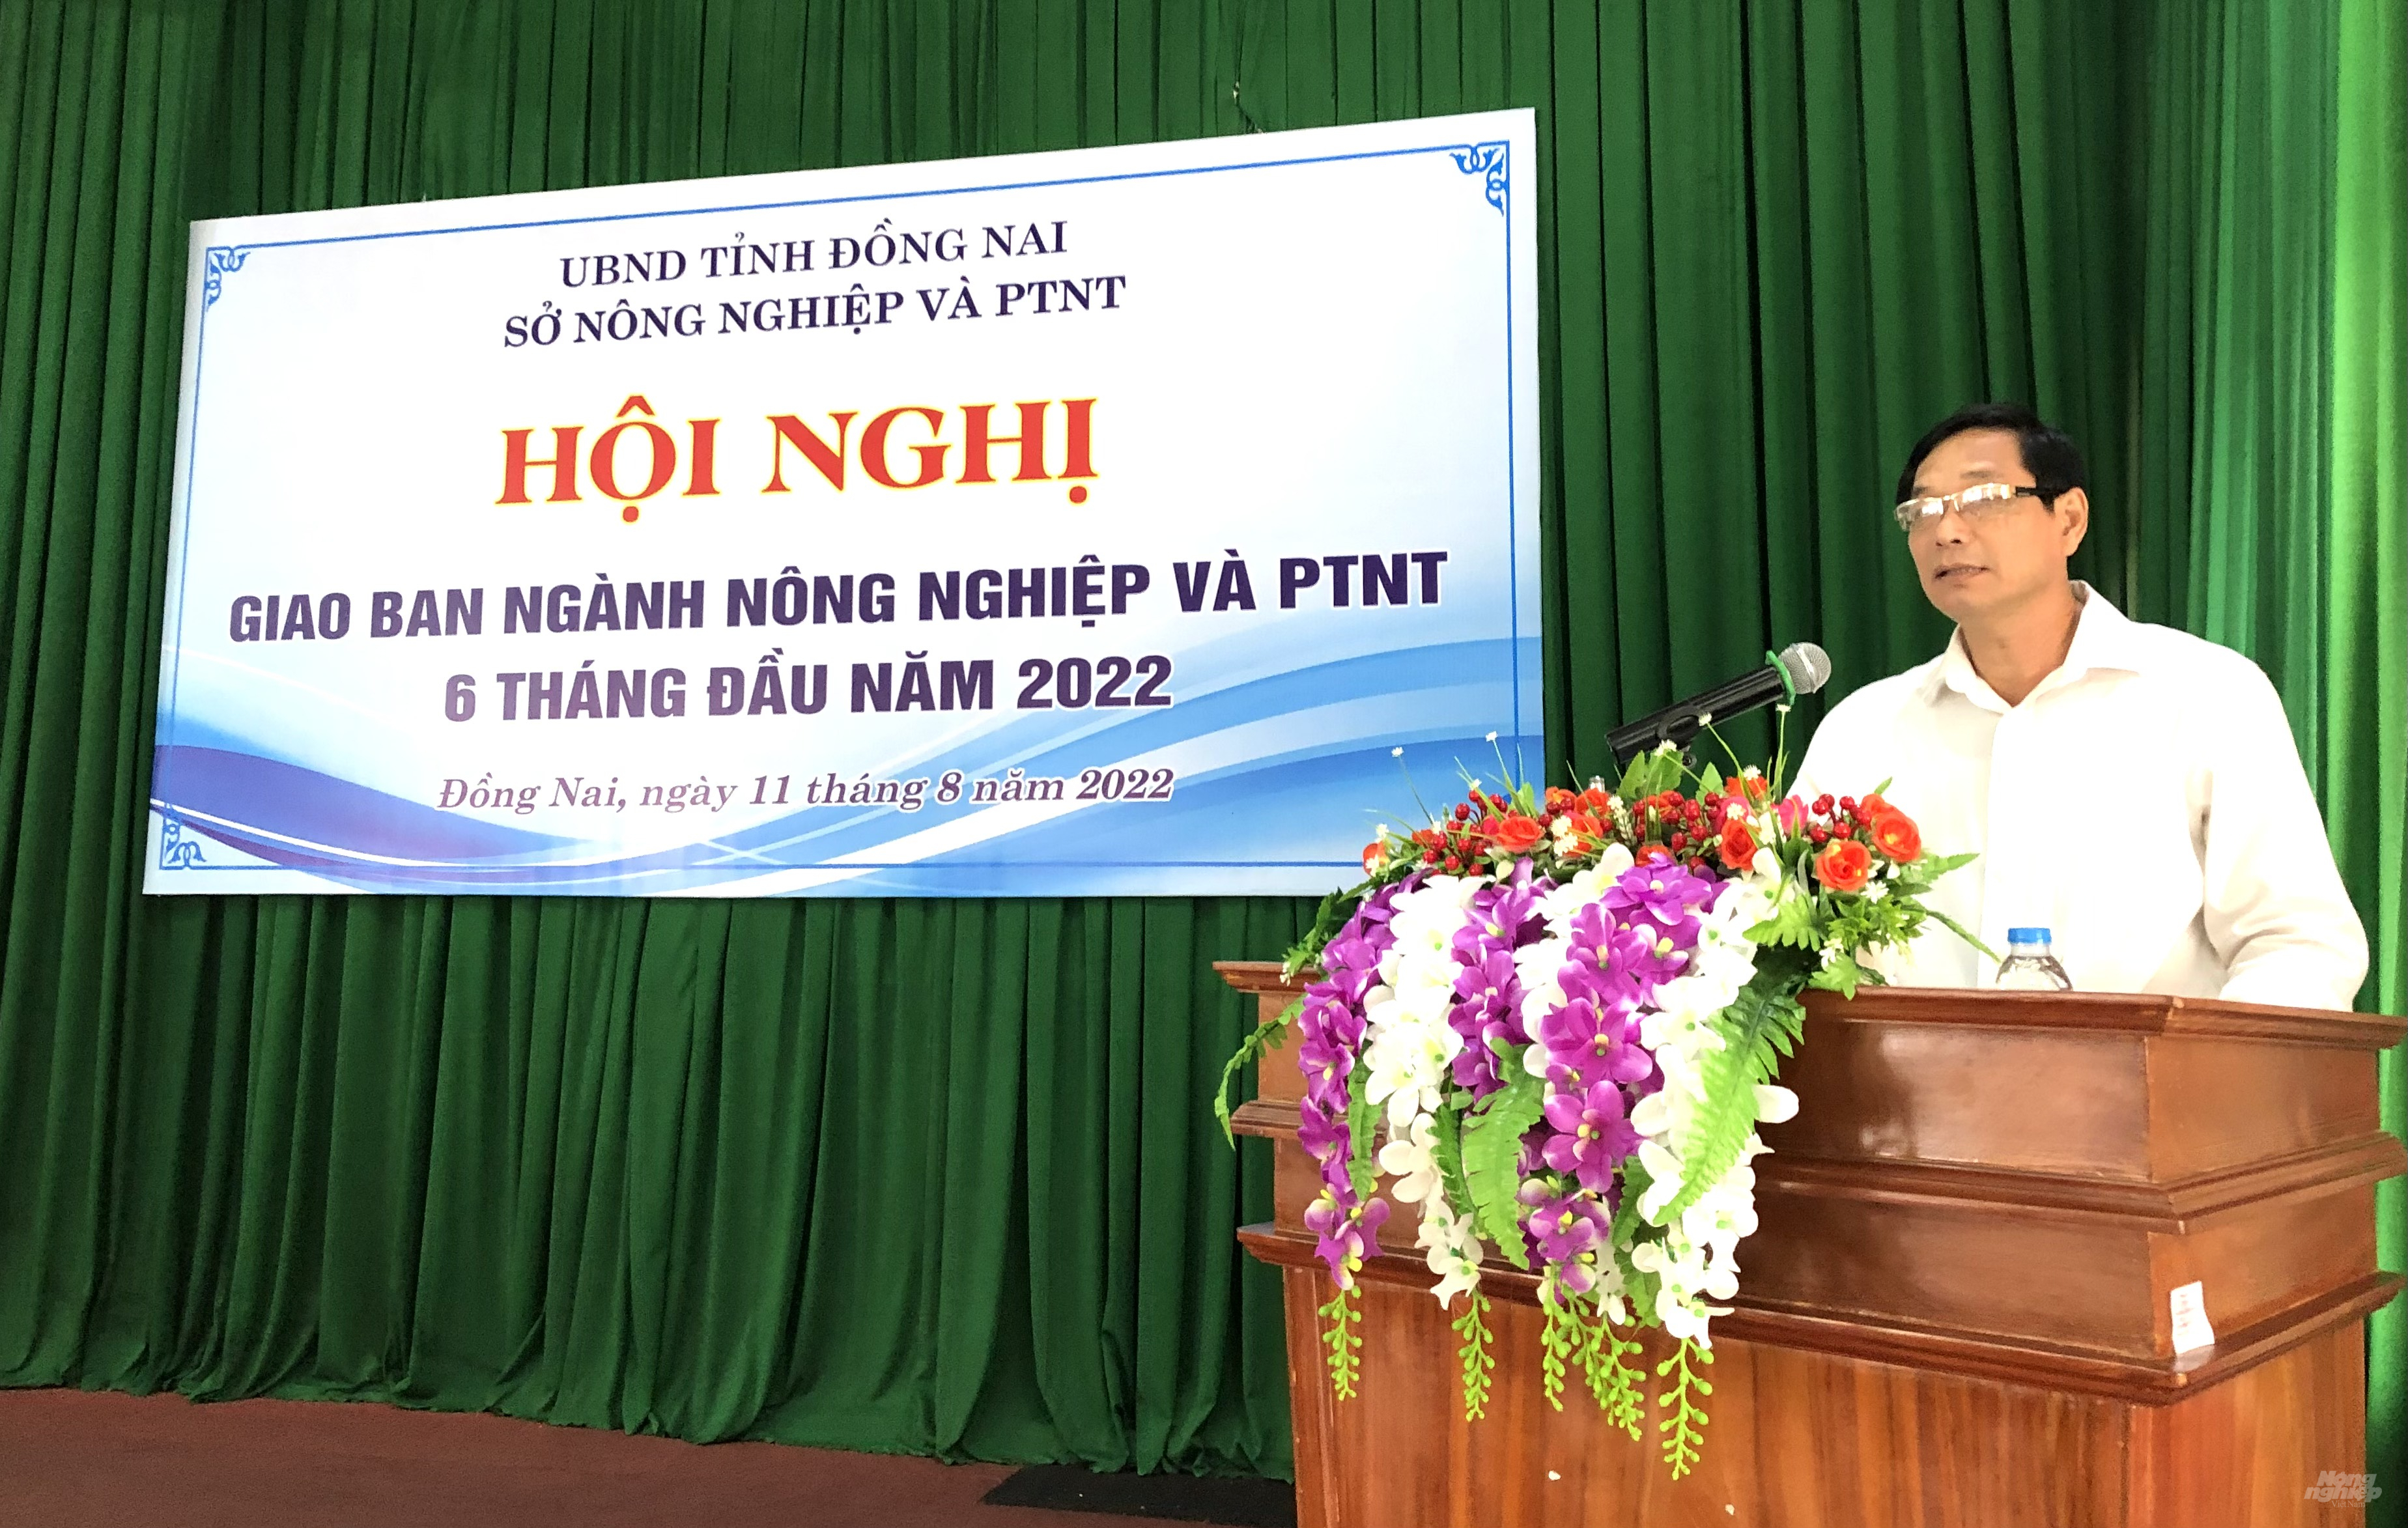 Phó Chủ tịch UBND tỉnh Đồng Nai Võ Văn Phi phát biểu chị đạo tại hội nghị. Ảnh: MV.